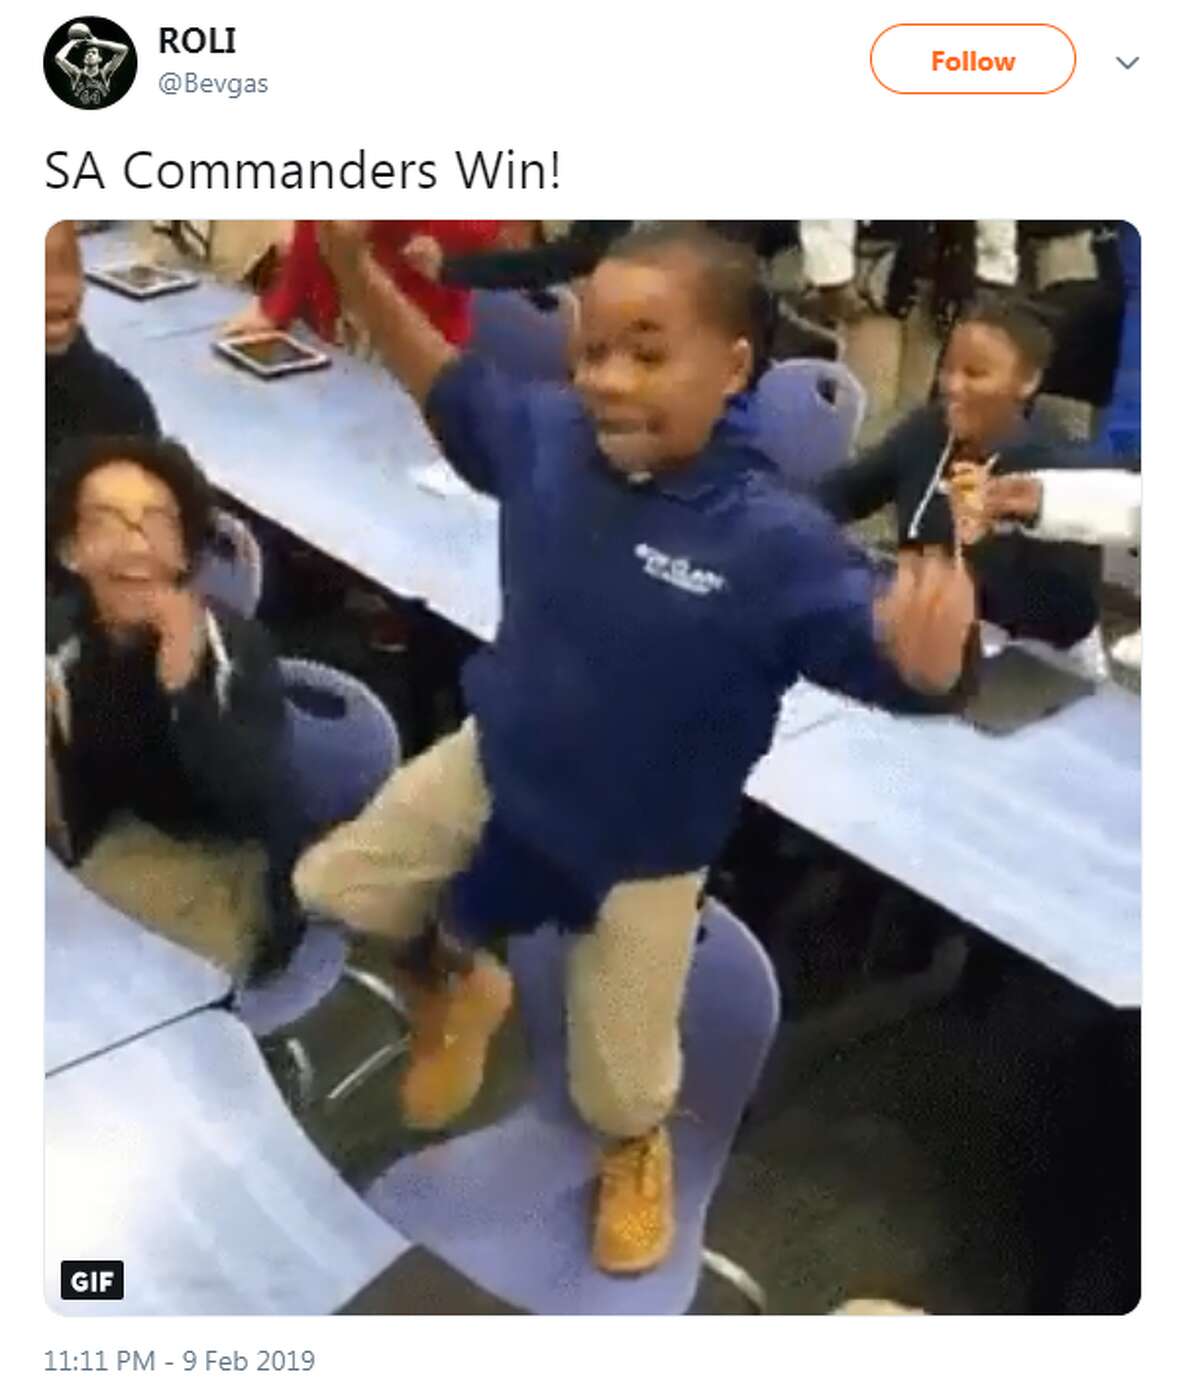 @Bevgas: SA Commanders Win!